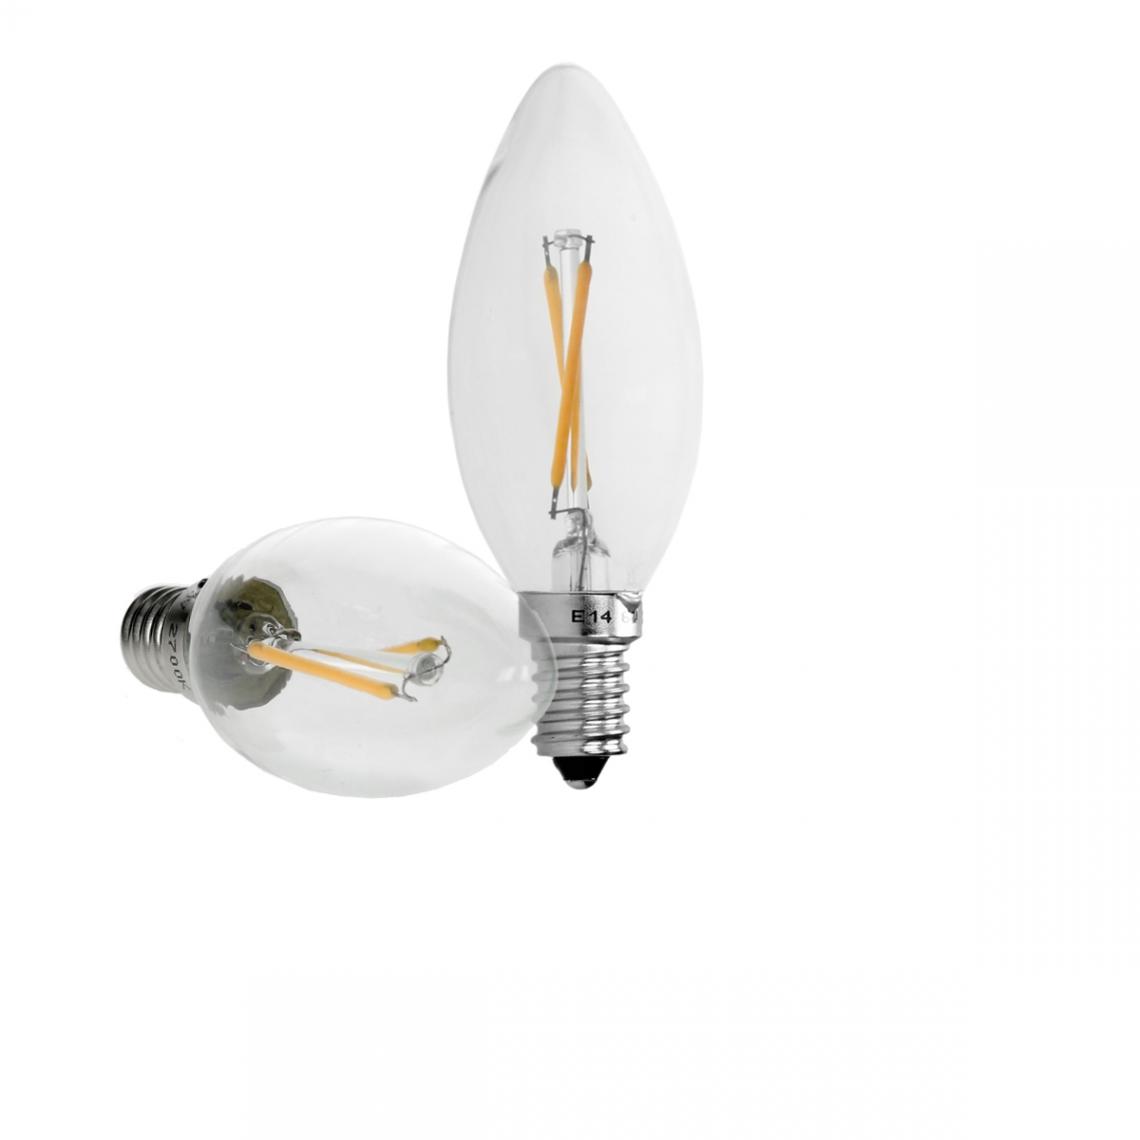 Ecd Germany - ECD Germany 1 paquet de bougies à filament LED E14 2W 204 lumens Angle de faisceau à 120 ° Le courant alternatif 220-240V initialise une lampe à incandescence de 15W environ - Ampoules LED